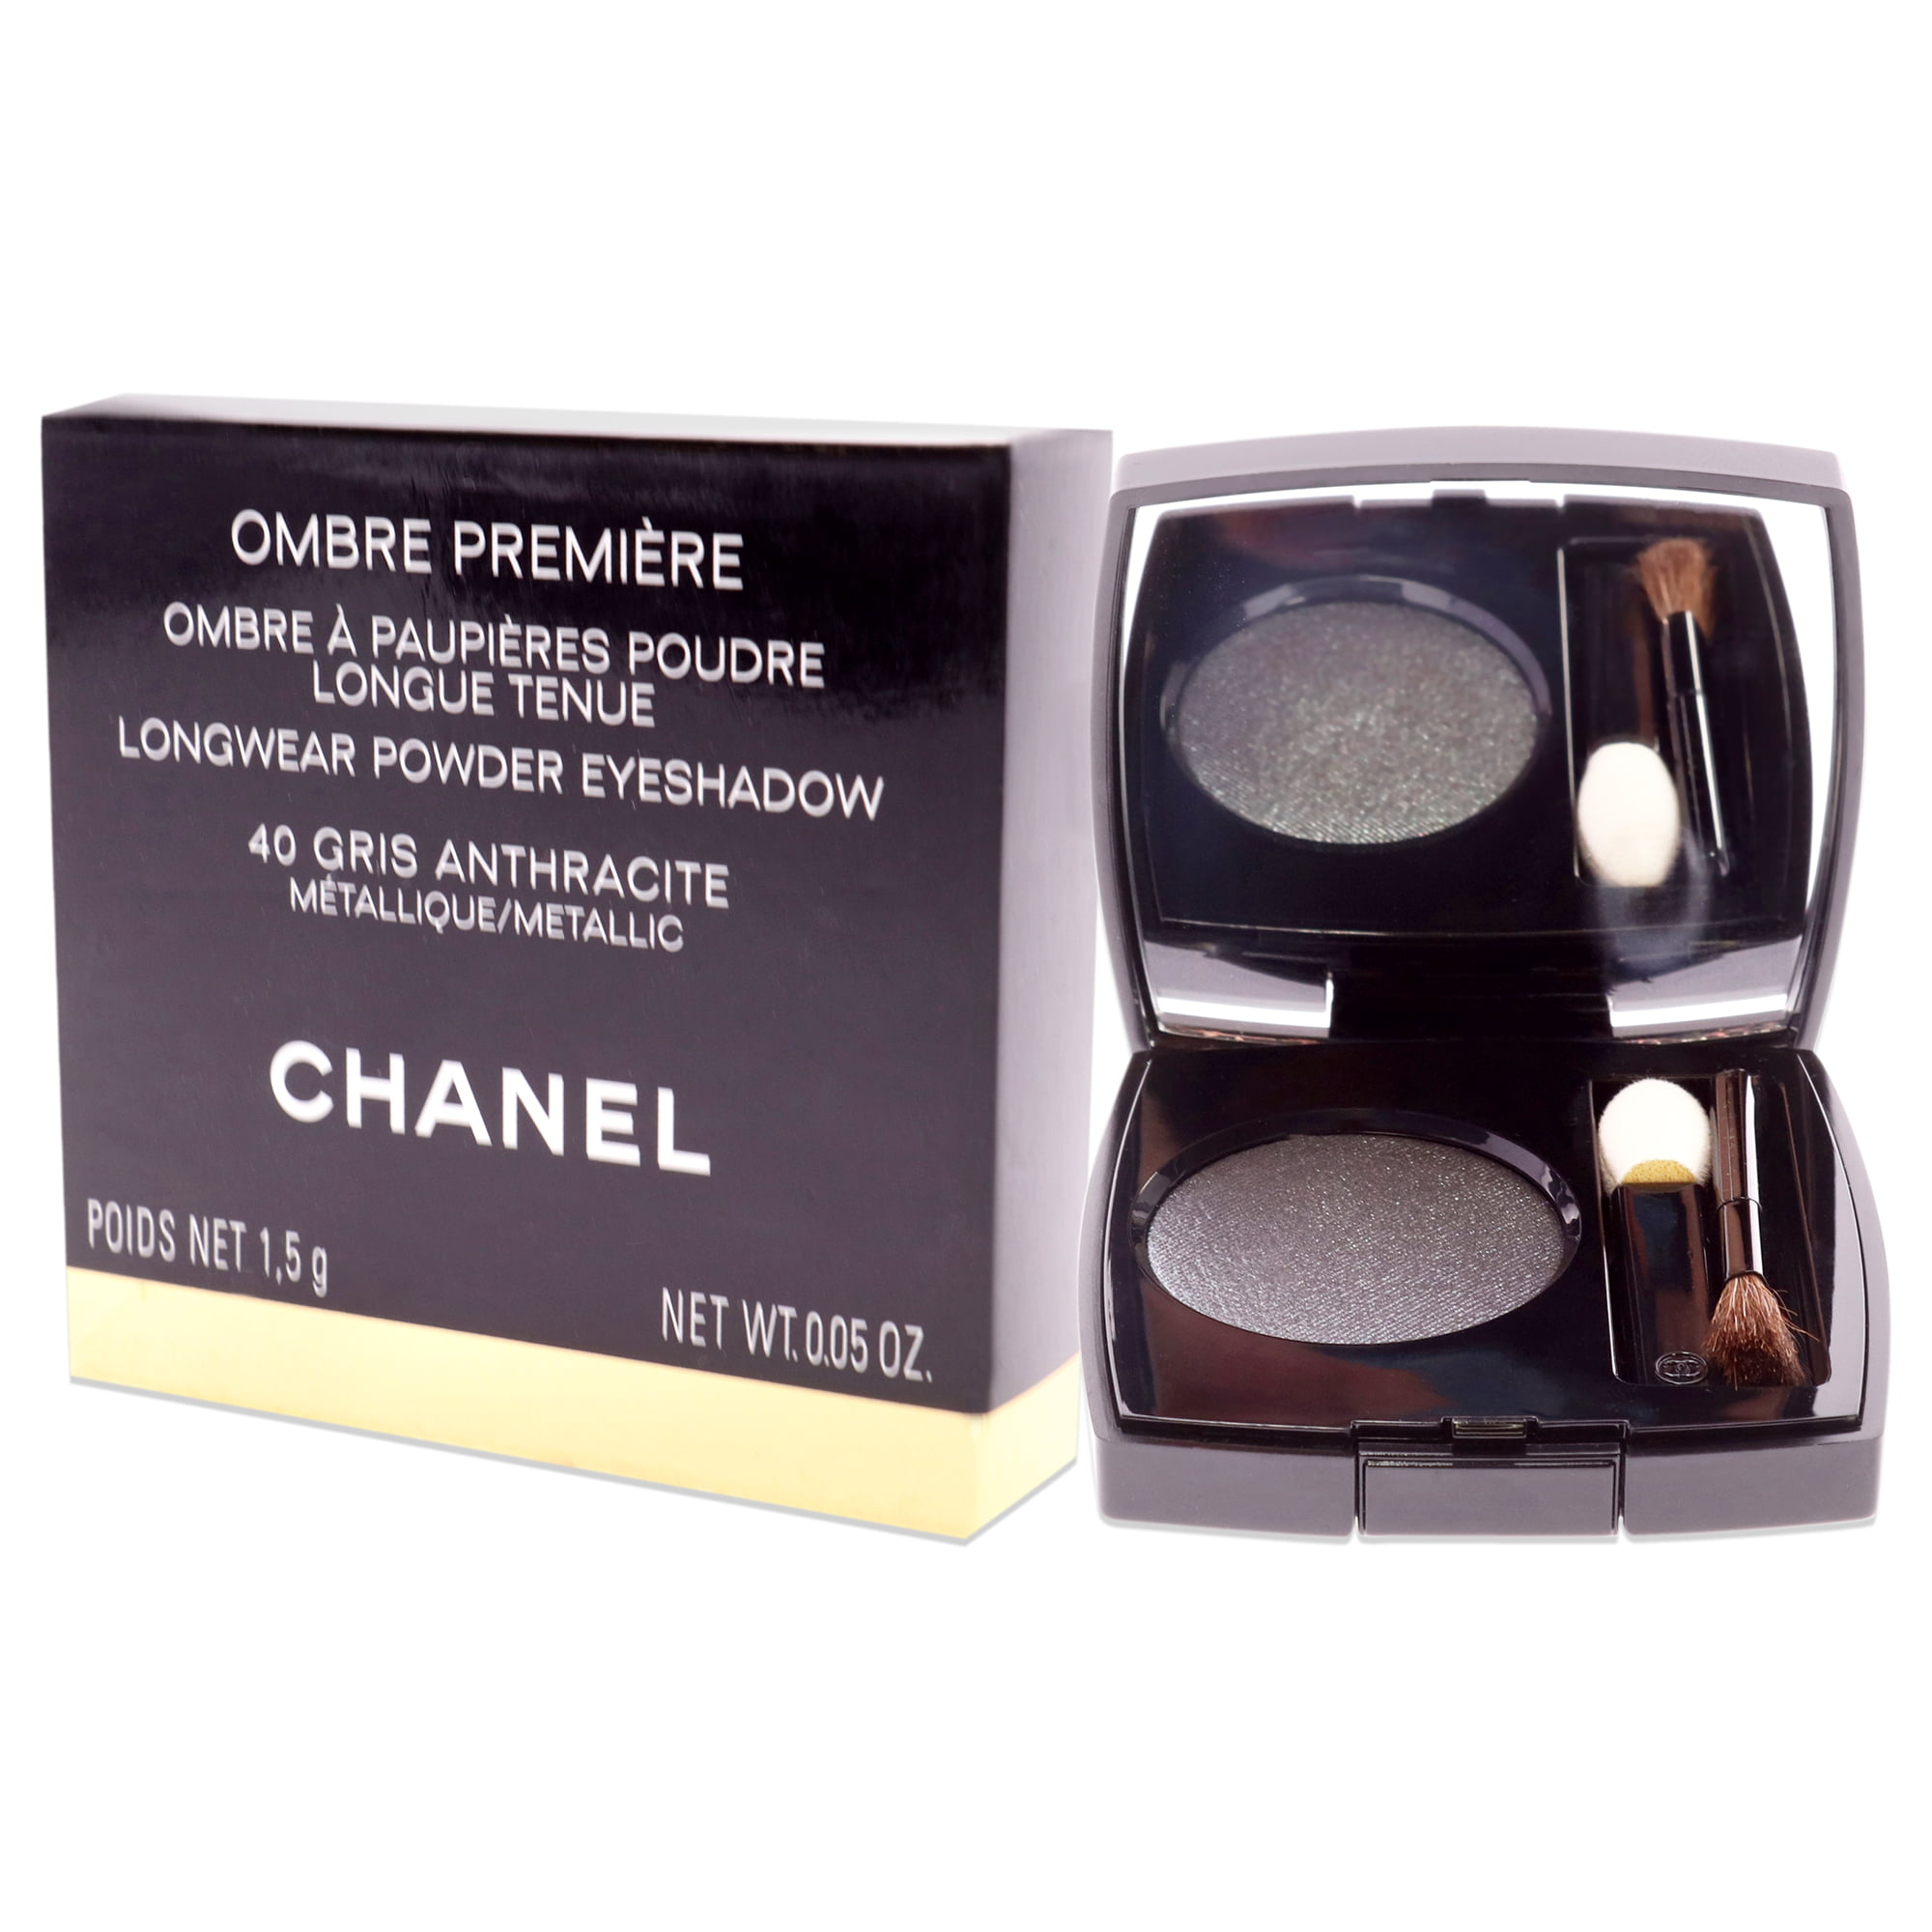 Oogschaduw - Chanel Ombre Premiere Top Coat Eyeshadow